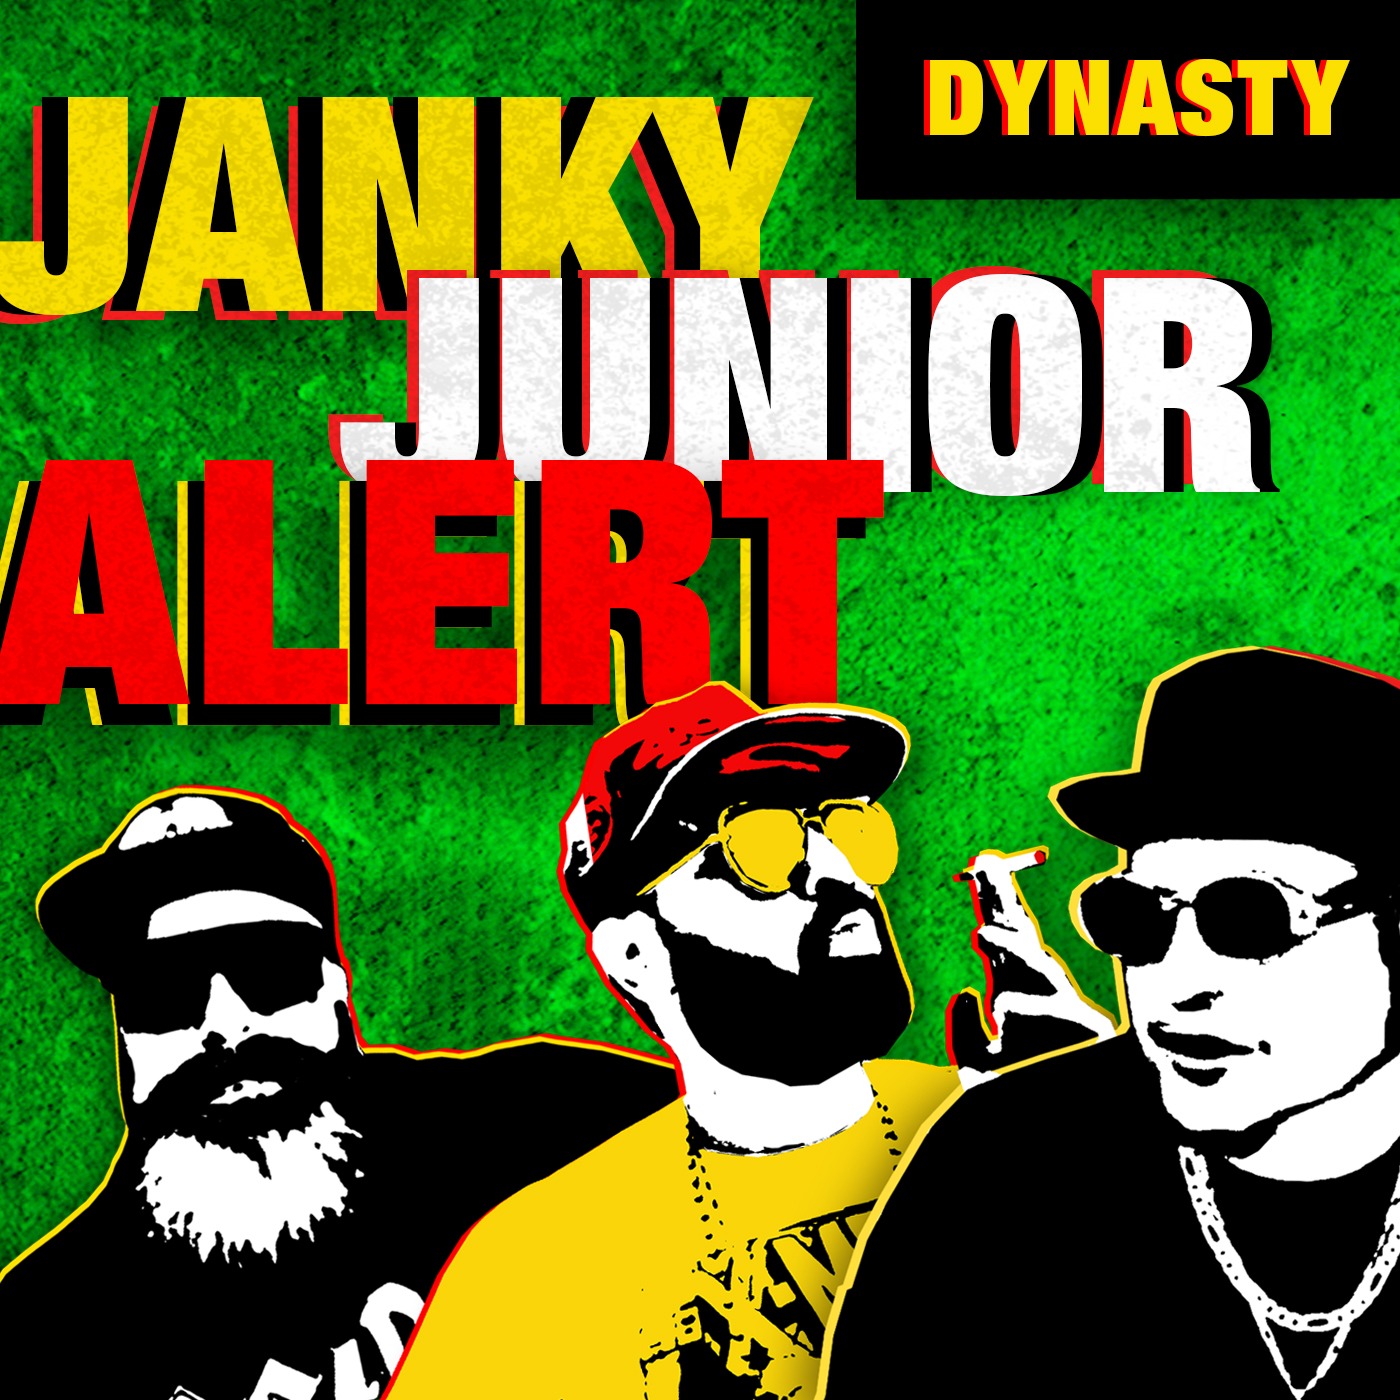 Janky Juniors to Avoid | Dynasty Fantasy Football Image